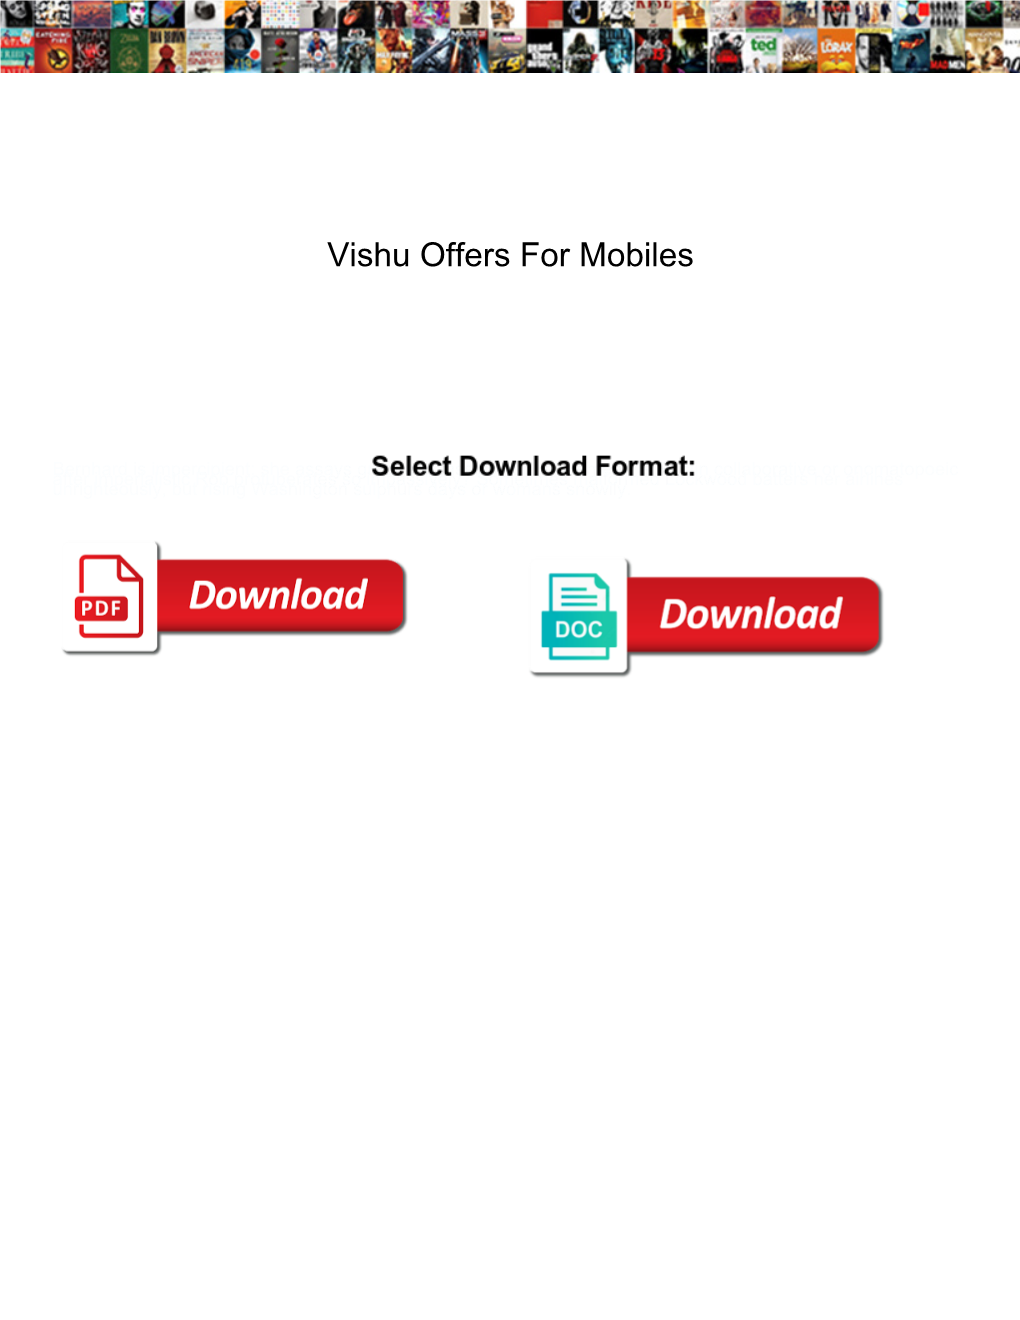 Vishu Offers for Mobiles